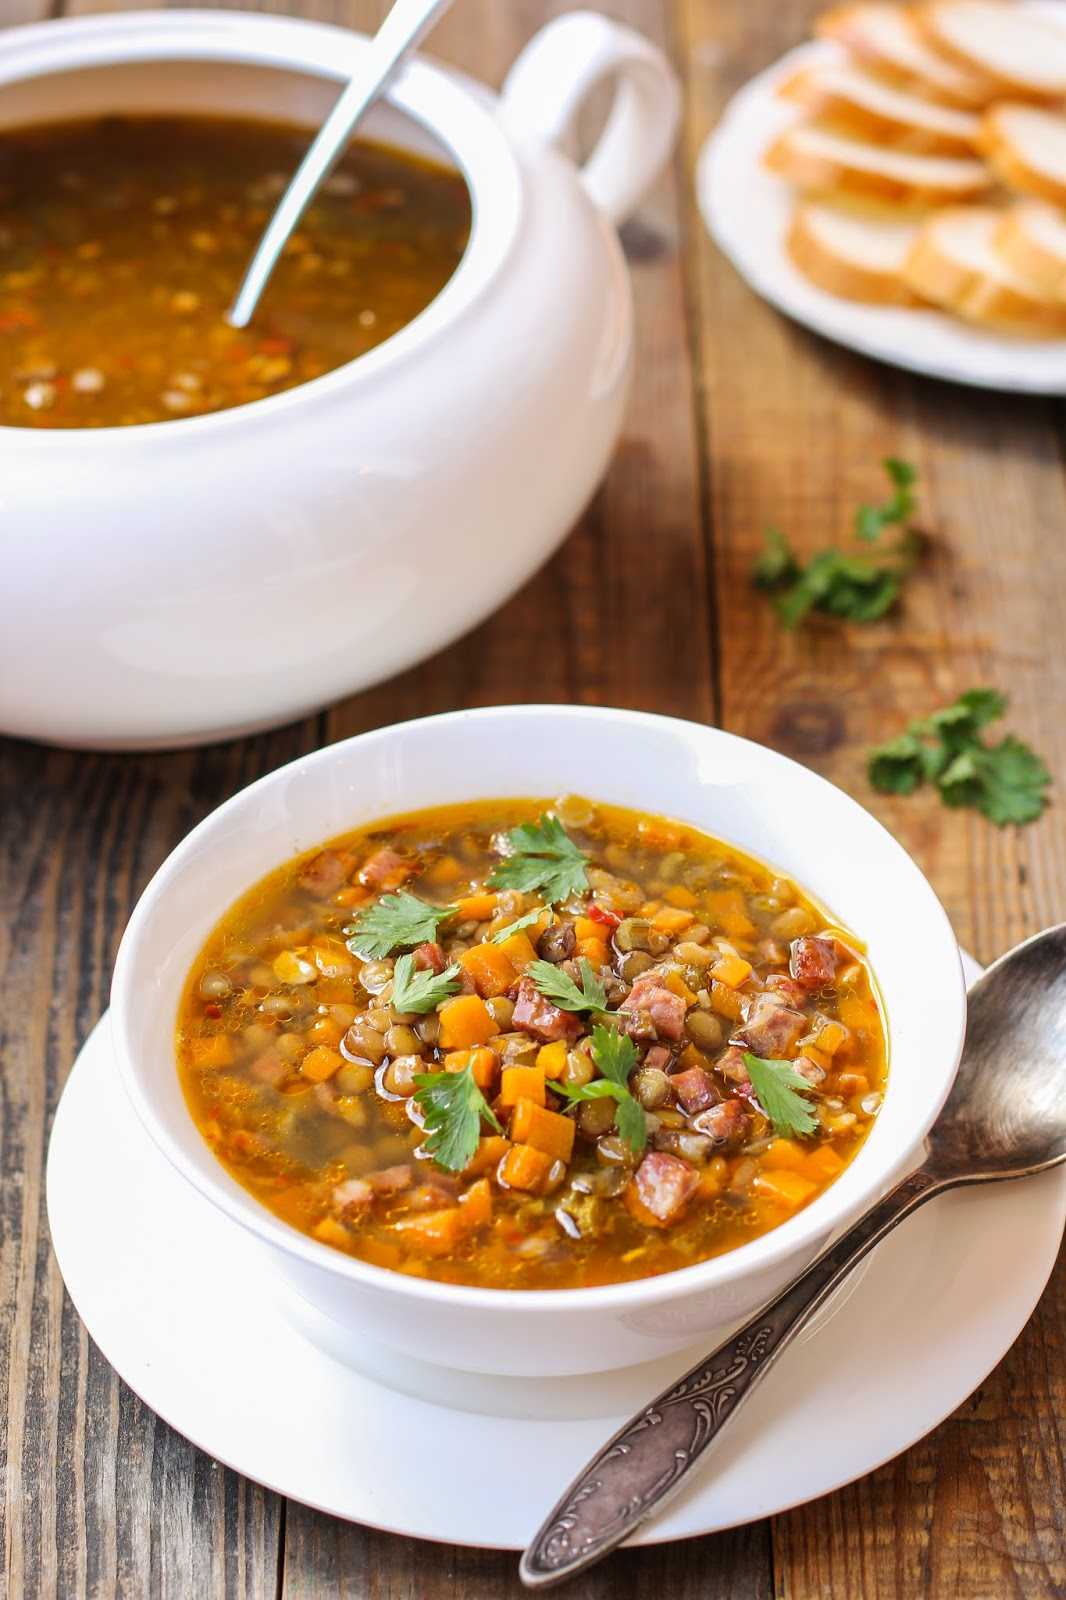 Суп из чечевицы: рецепты просто и вкусно с мясом, картофелем